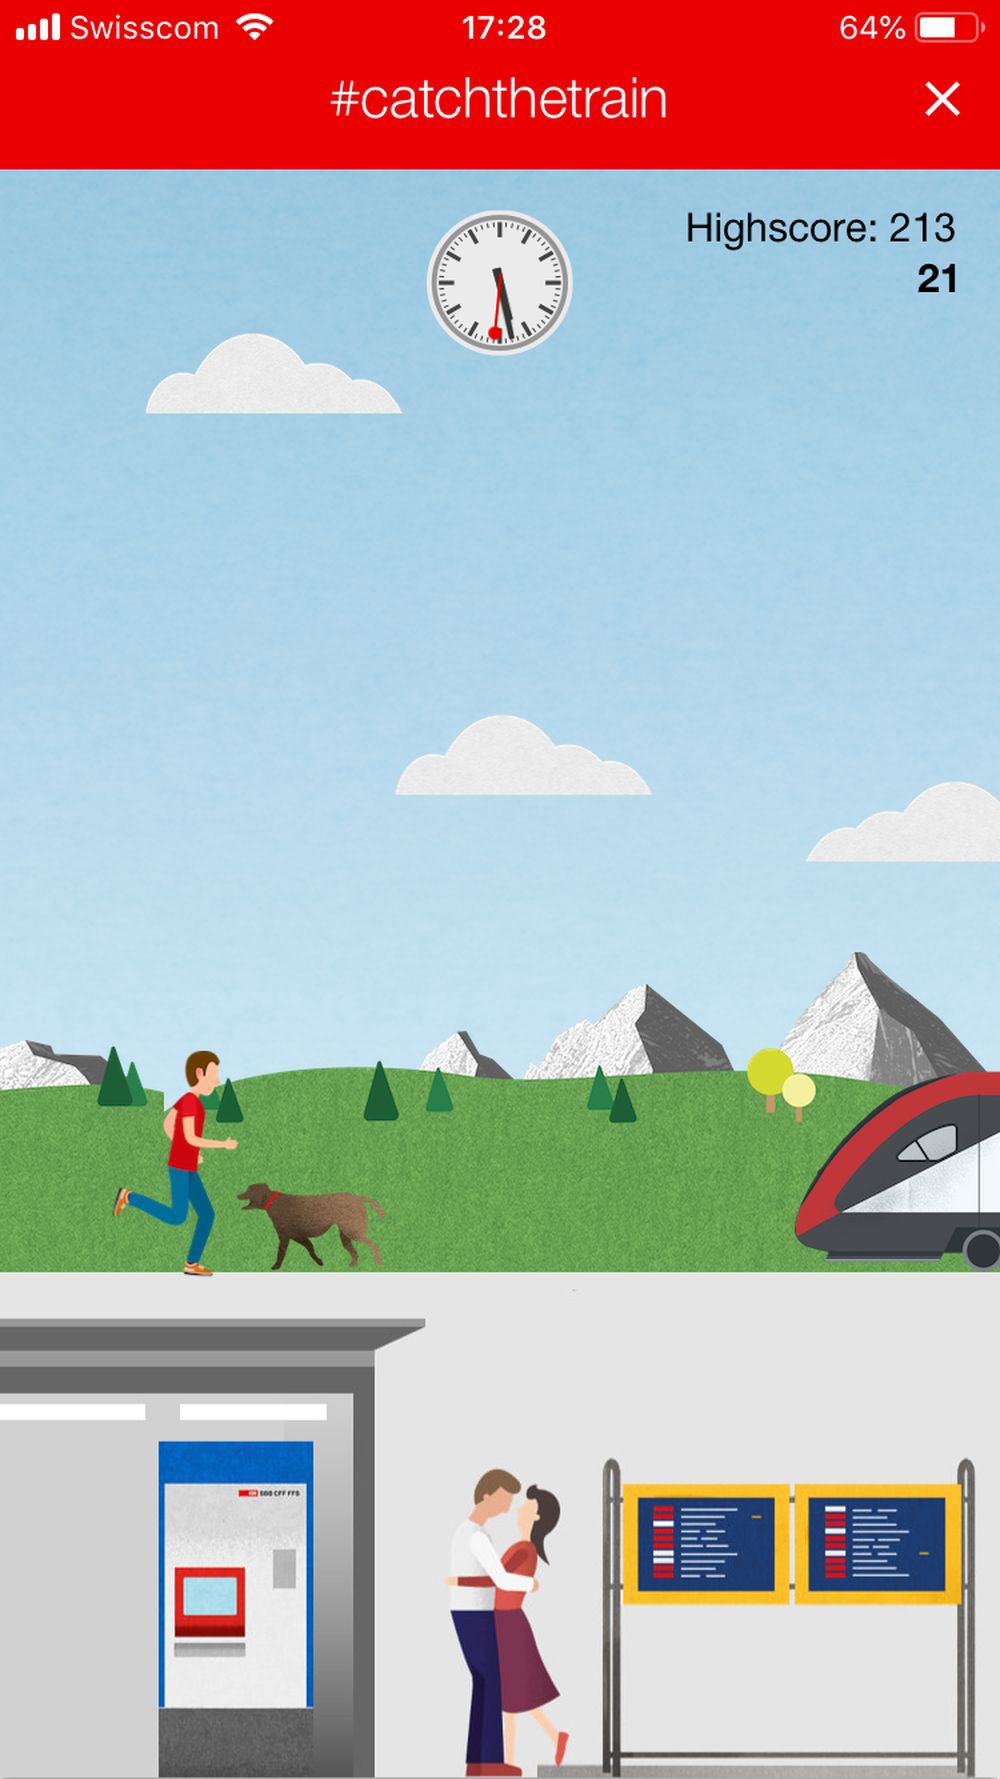 Le but? Attraper votre train en évitant des chiens, des pigeons et des ballons de basket.